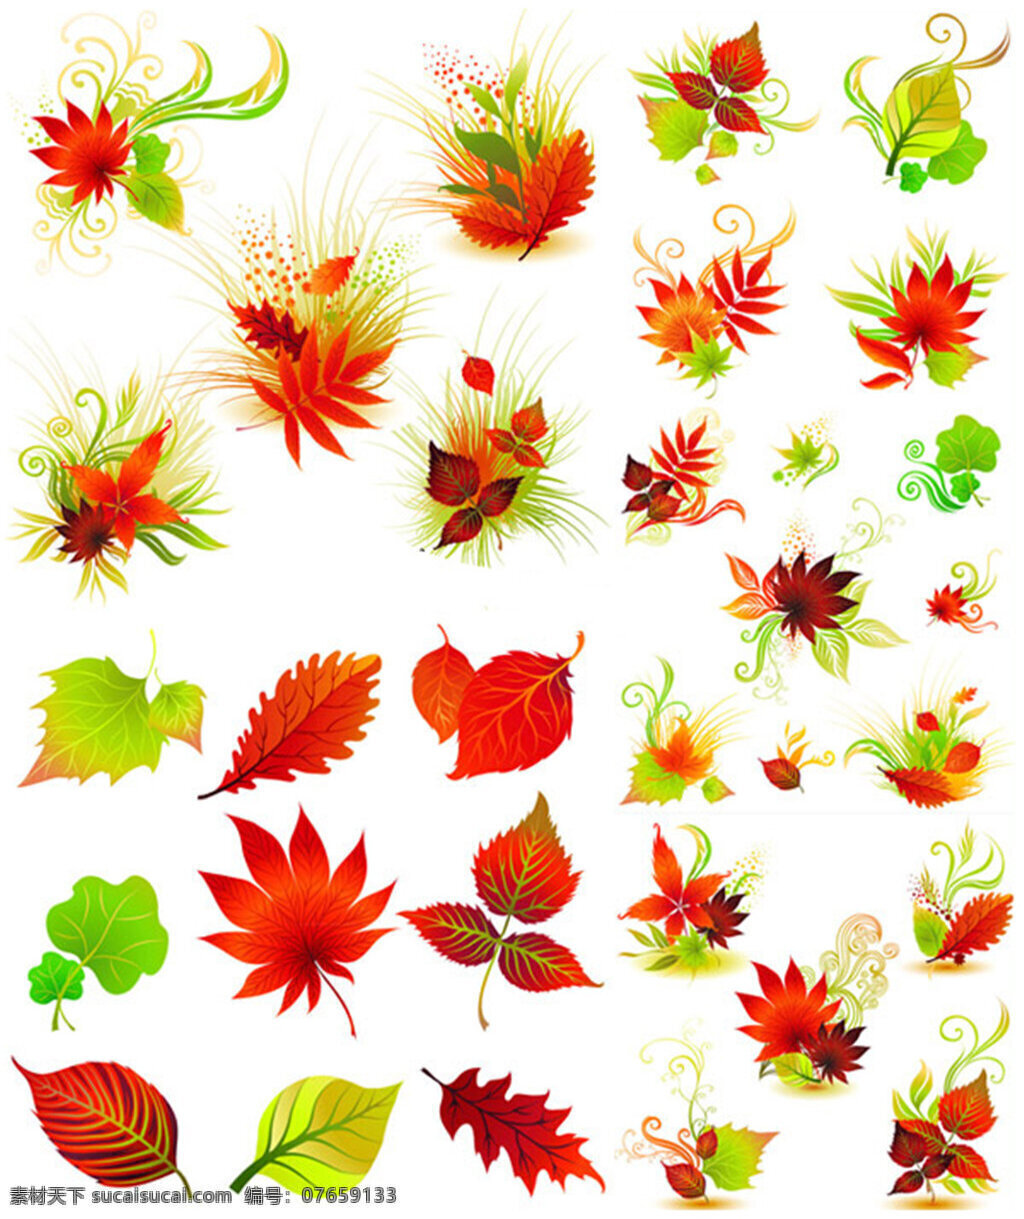 精美 红叶 矢量 矢量植物 叶子 秋天 枫叶 叶脉花纹 图案 植物 秋季 落叶 秋叶 彩带 秋果 绿叶 黄叶 白色